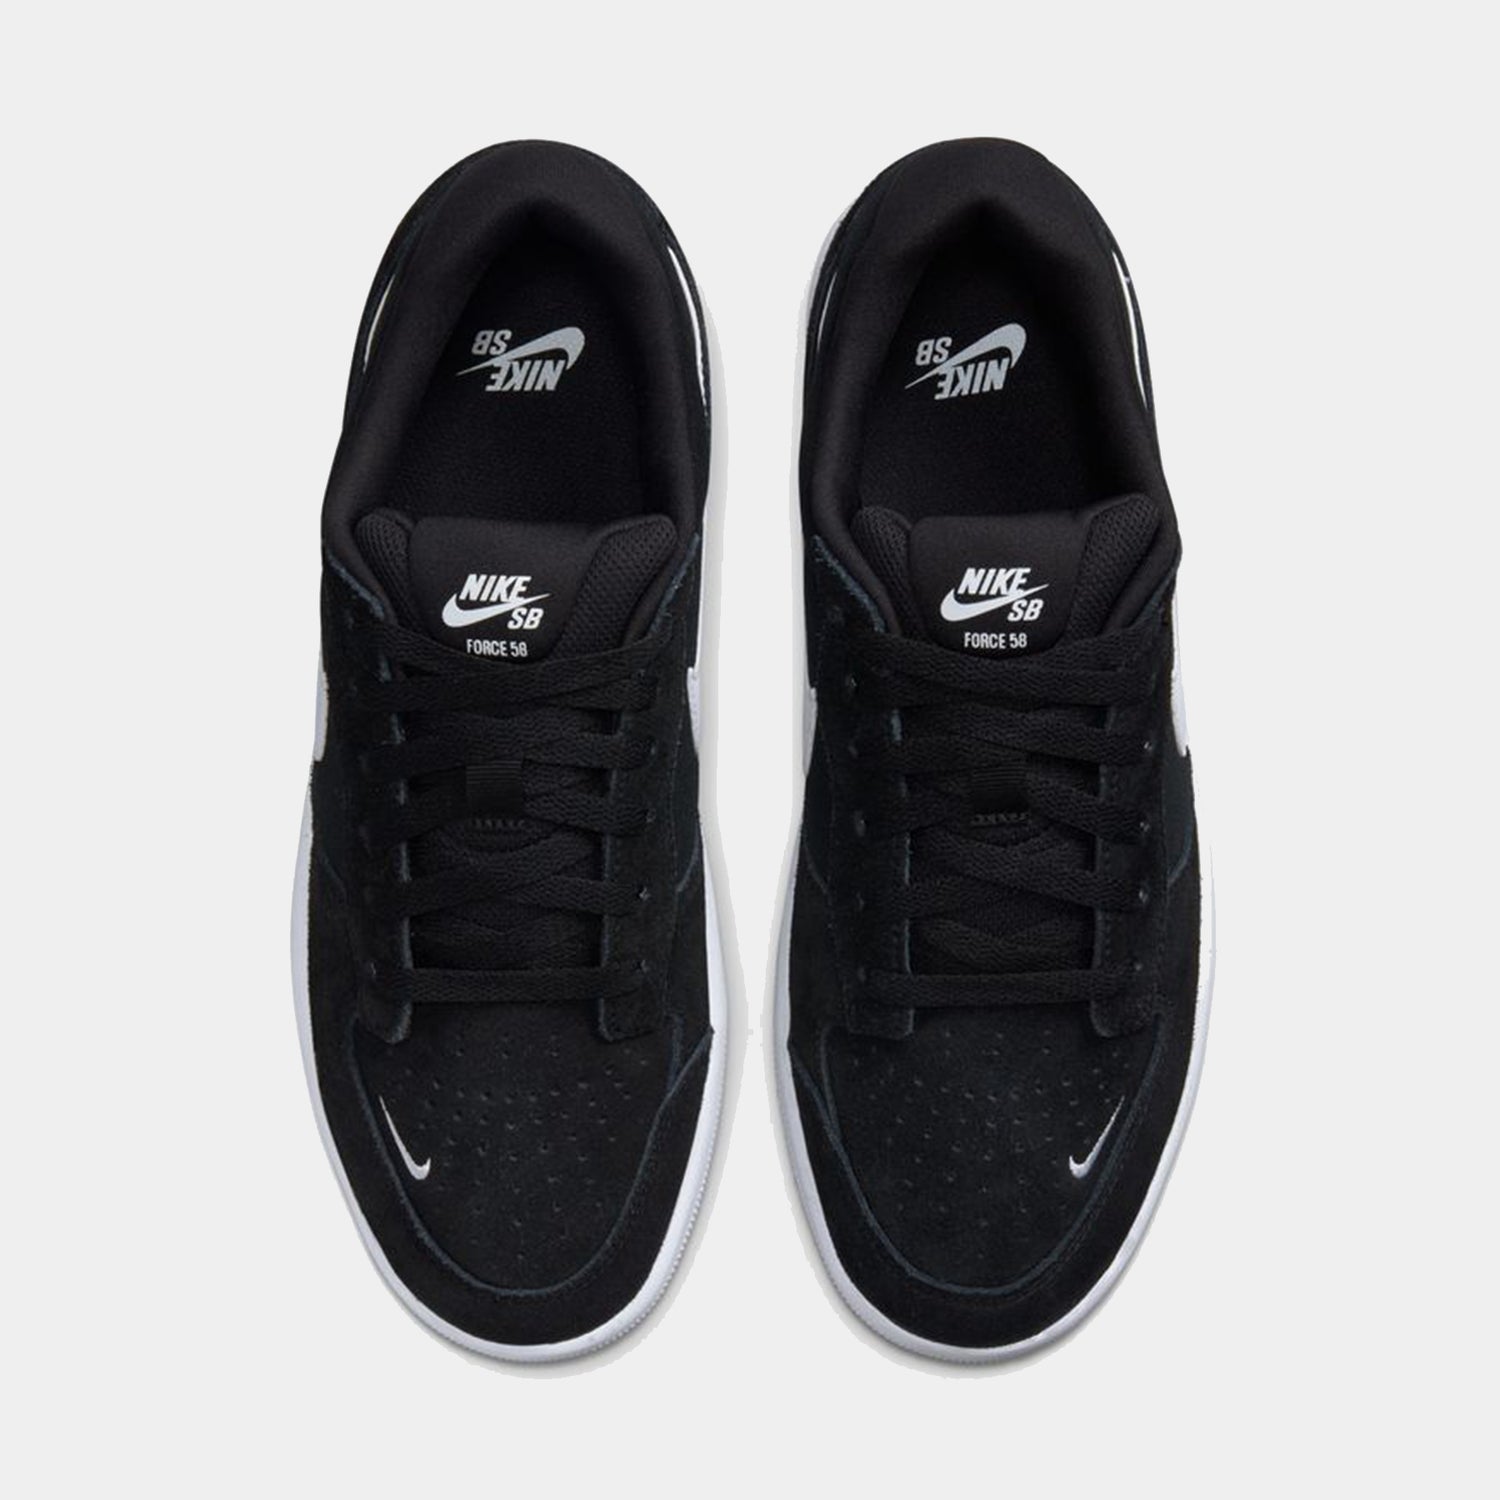 Nike SB - Force 58